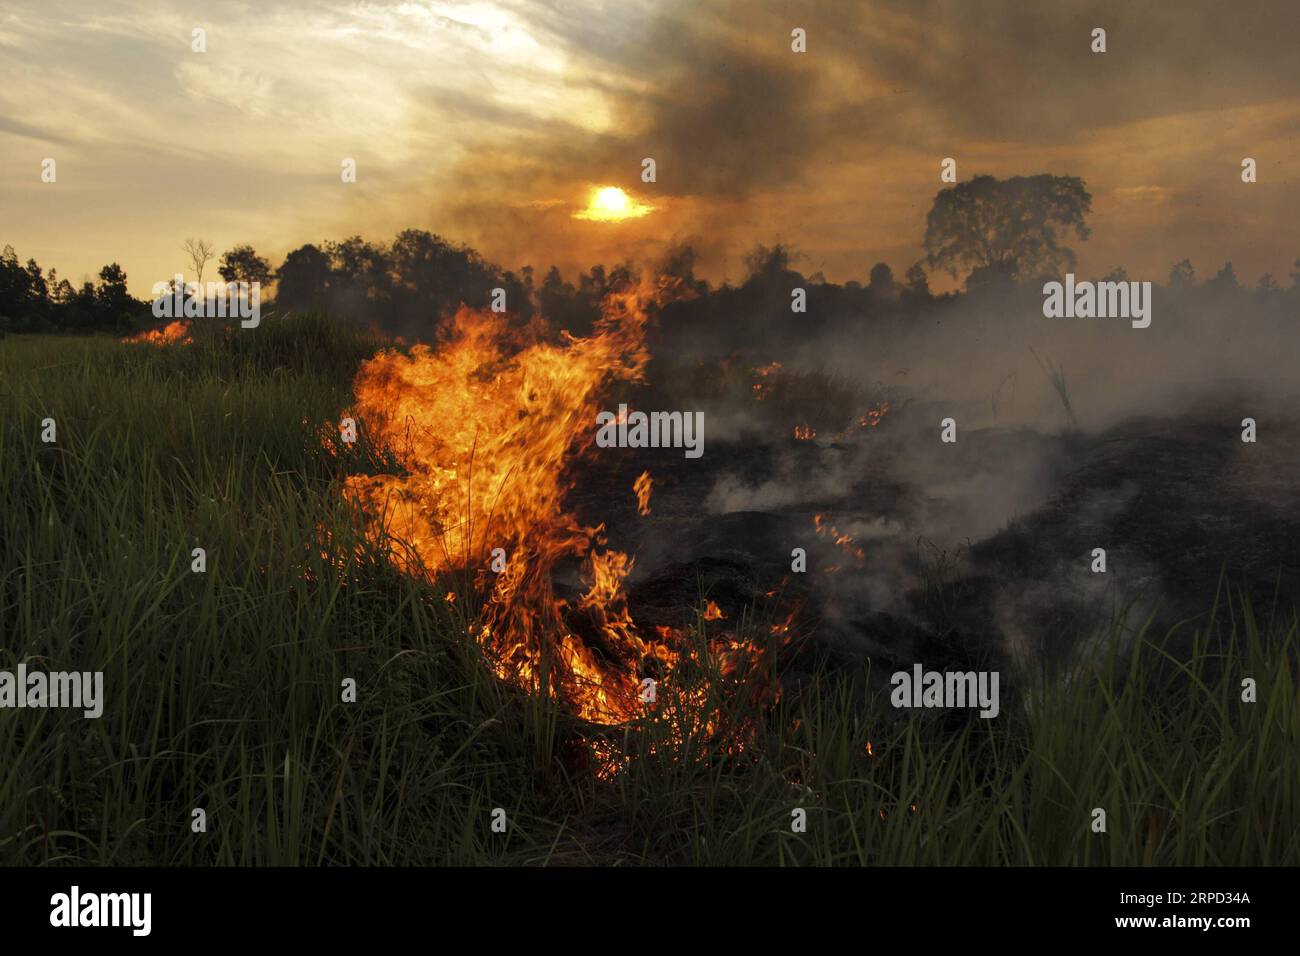 (190720) -- RIAU, 20 luglio 2019 -- foto scattata il 20 luglio 2019 mostra l'incendio di torbiere a Payung Sekaki, Pekanbaru, Riau, Indonesia. Una squadra congiunta di vigili del fuoco locali, polizia e ufficiali militari ha cercato di estinguere gli incendi boschivi diversi giorni fa. INDONESIA-RIAU-PEATLAND FIRE HadlyxVavaldi PUBLICATIONxNOTxINxCHN Foto Stock